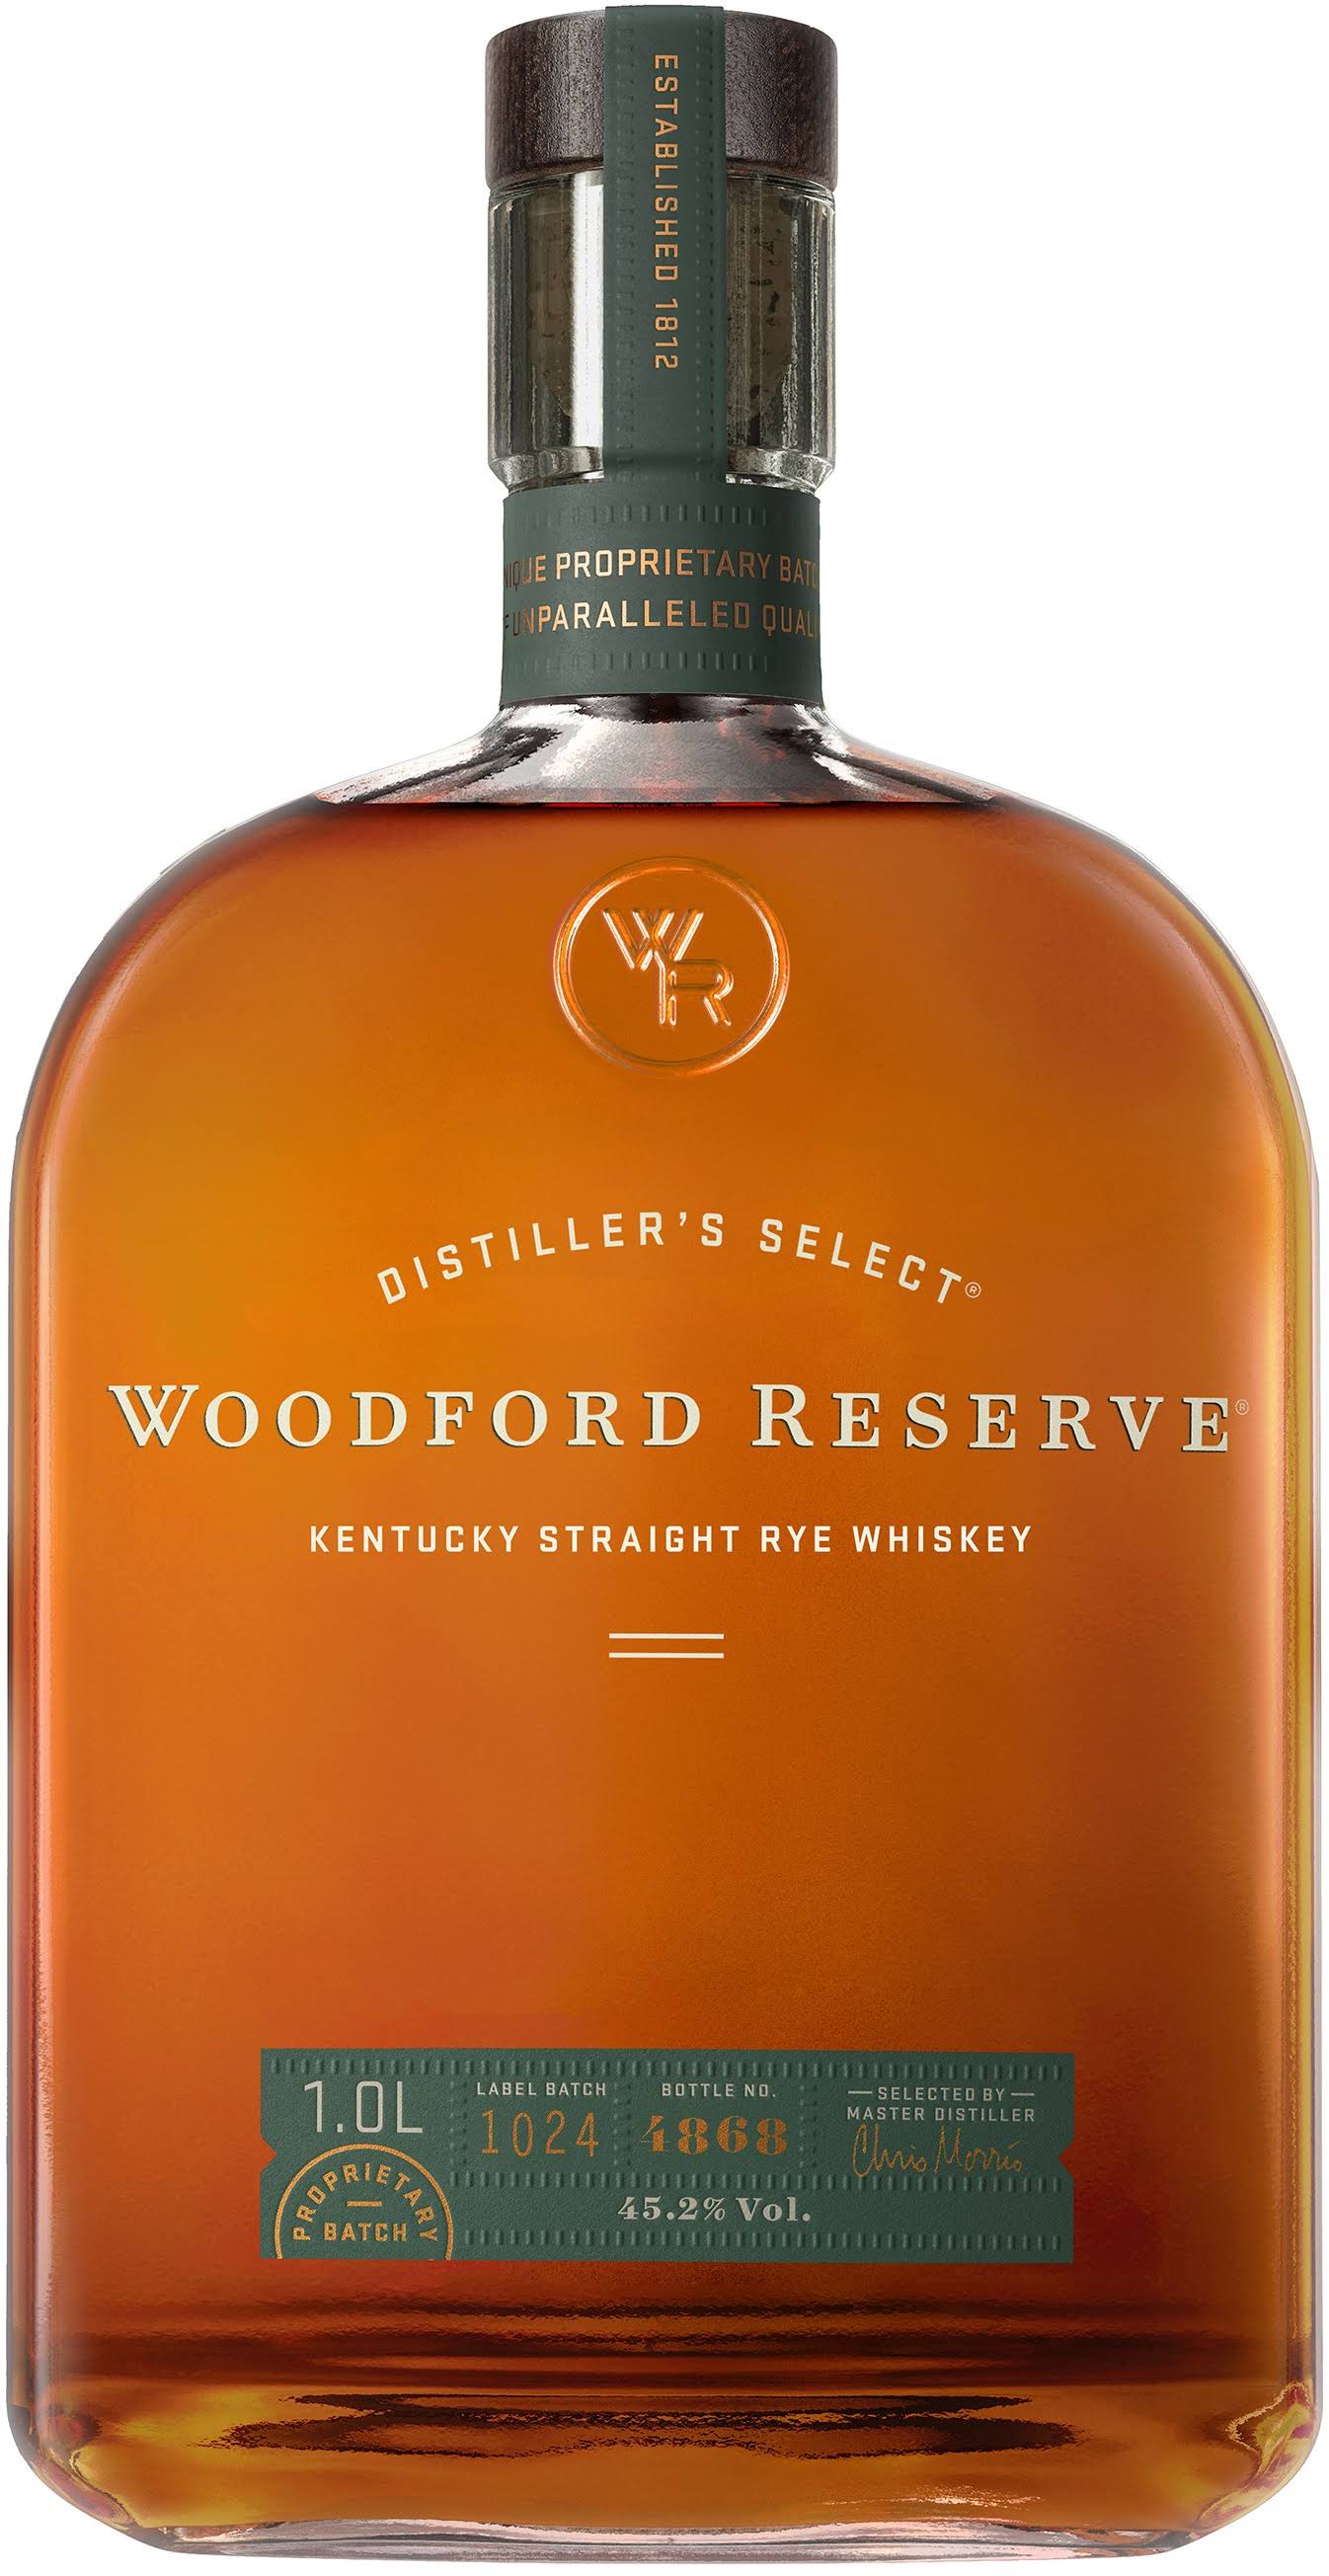 Woodford Reserve Kentucky Straight Rye Whiskey - 750 ml bottle